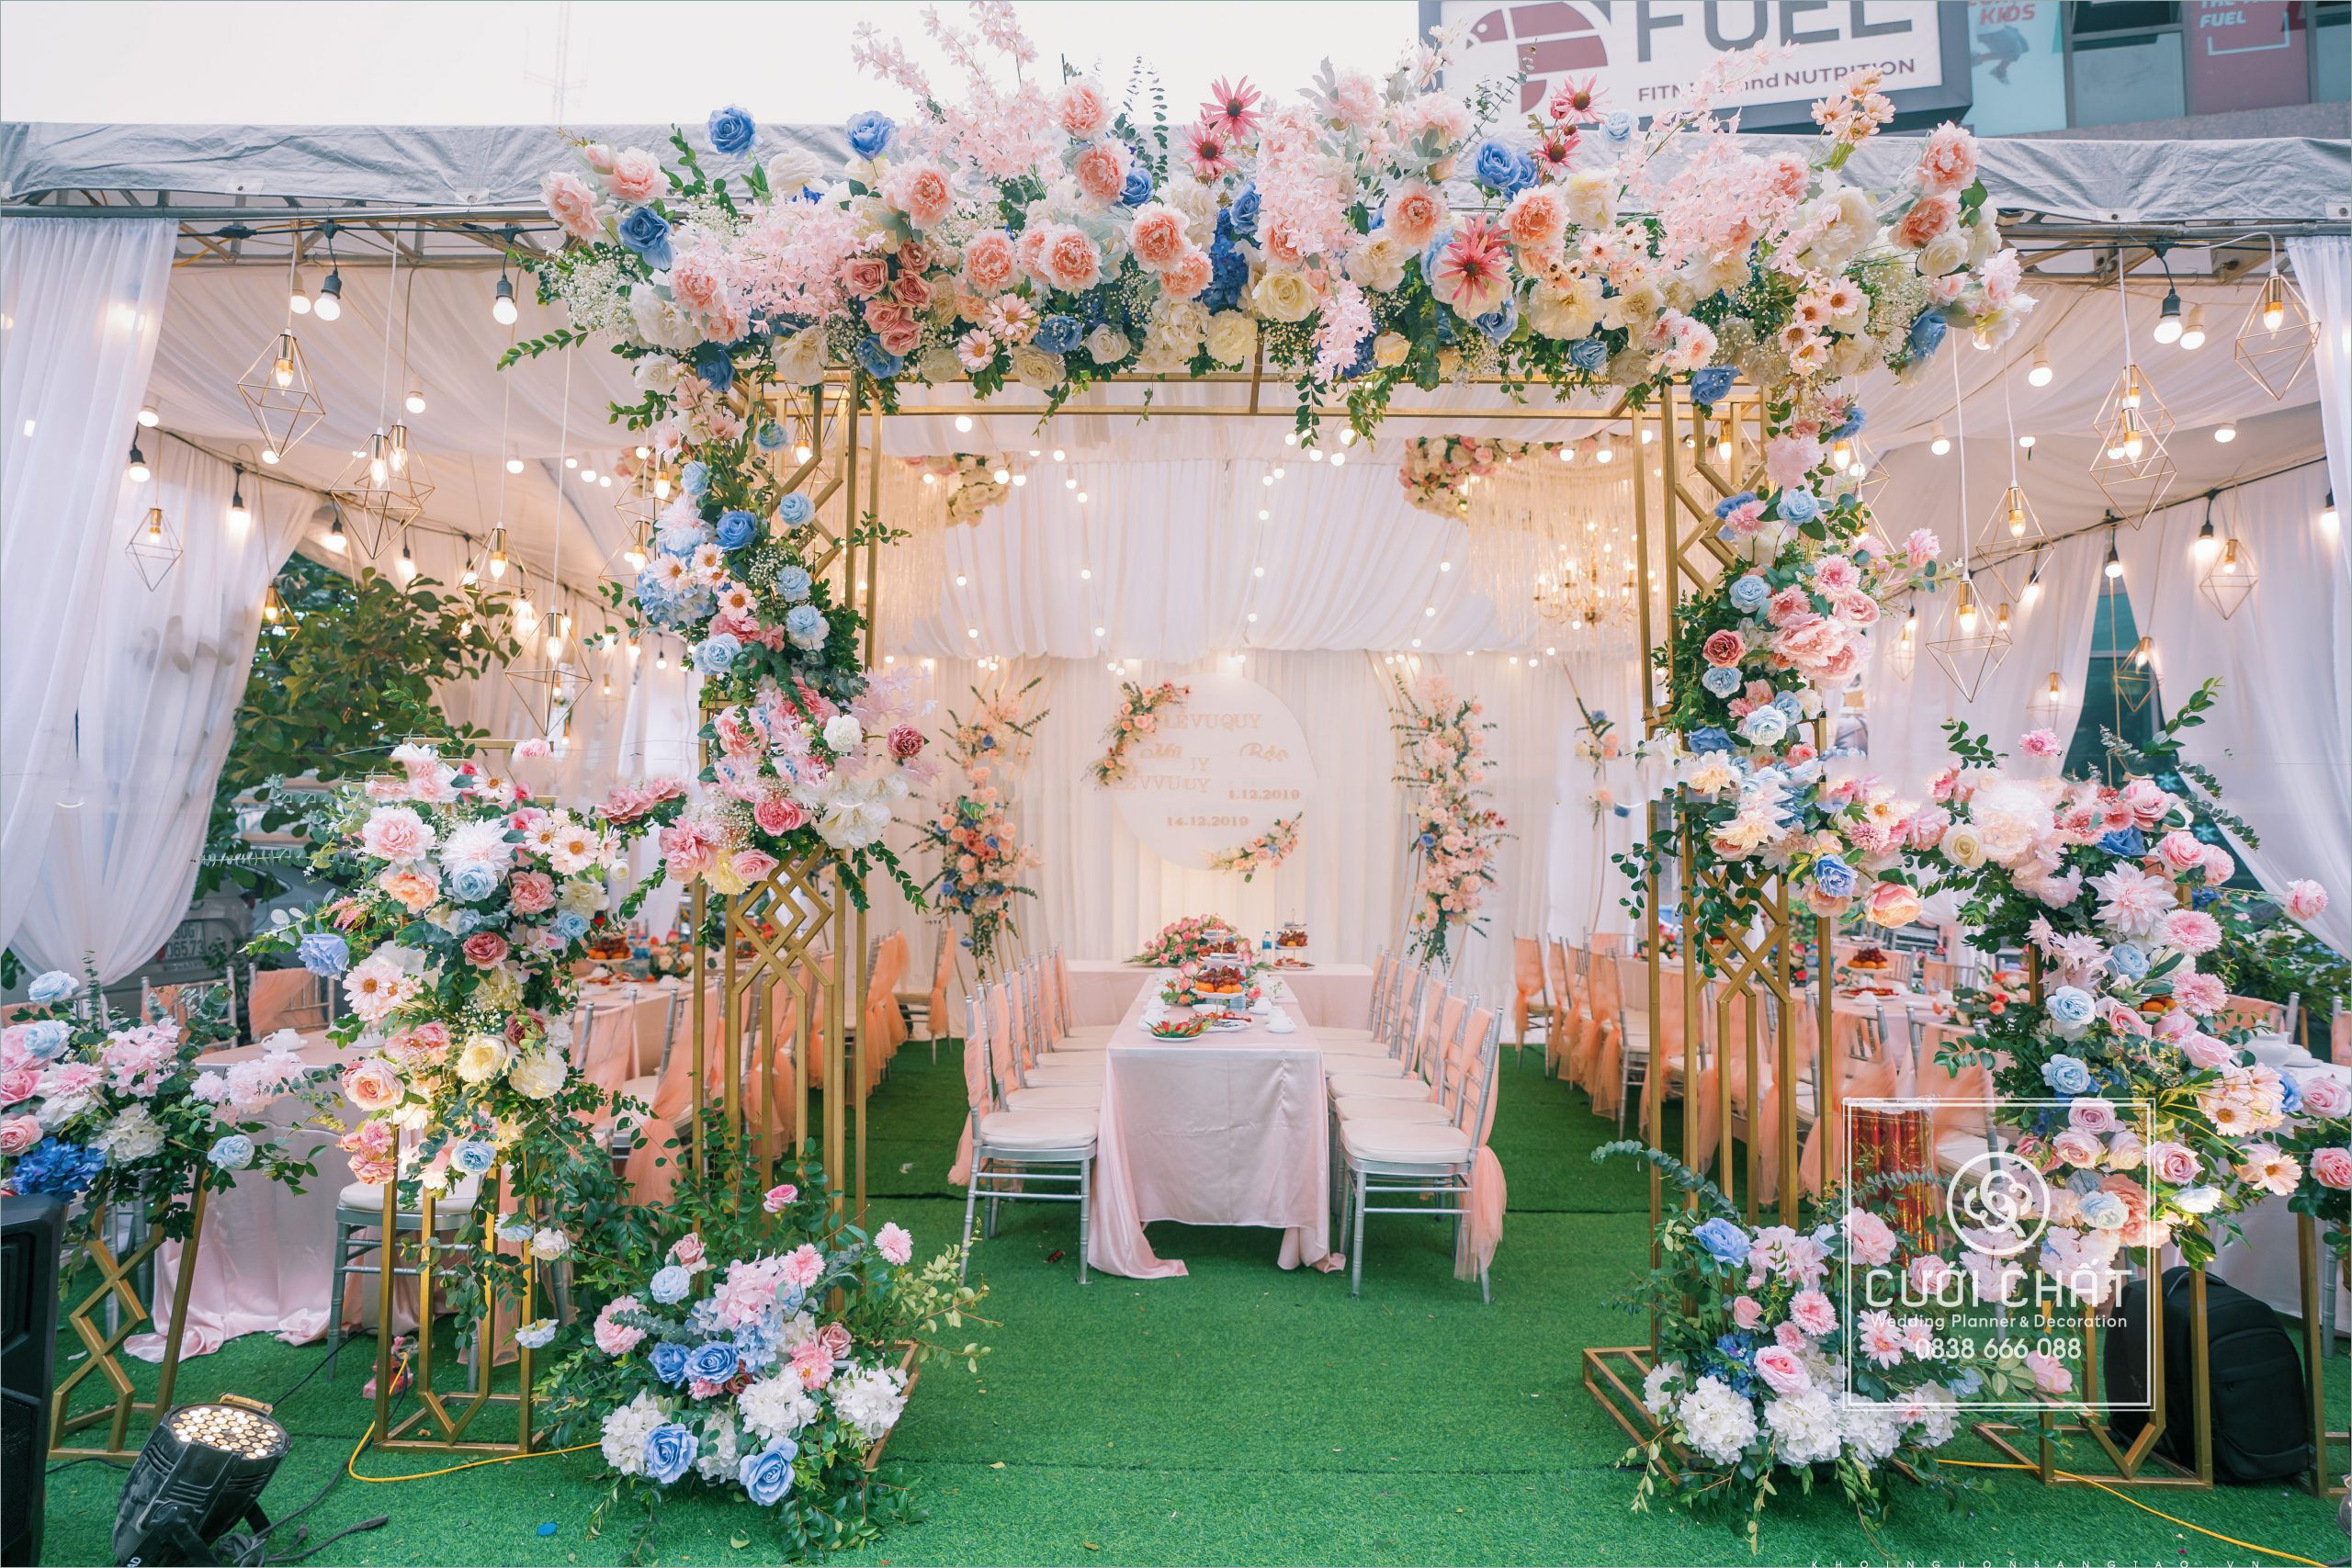 Cổng hoa cưới là điểm nhấn không thể thiếu trong ngày cưới của mỗi cặp đôi. Hãy chiêm ngưỡng những cổng hoa cưới đẹp mắt và lộng lẫy nhất trong bộ sưu tập ảnh này.